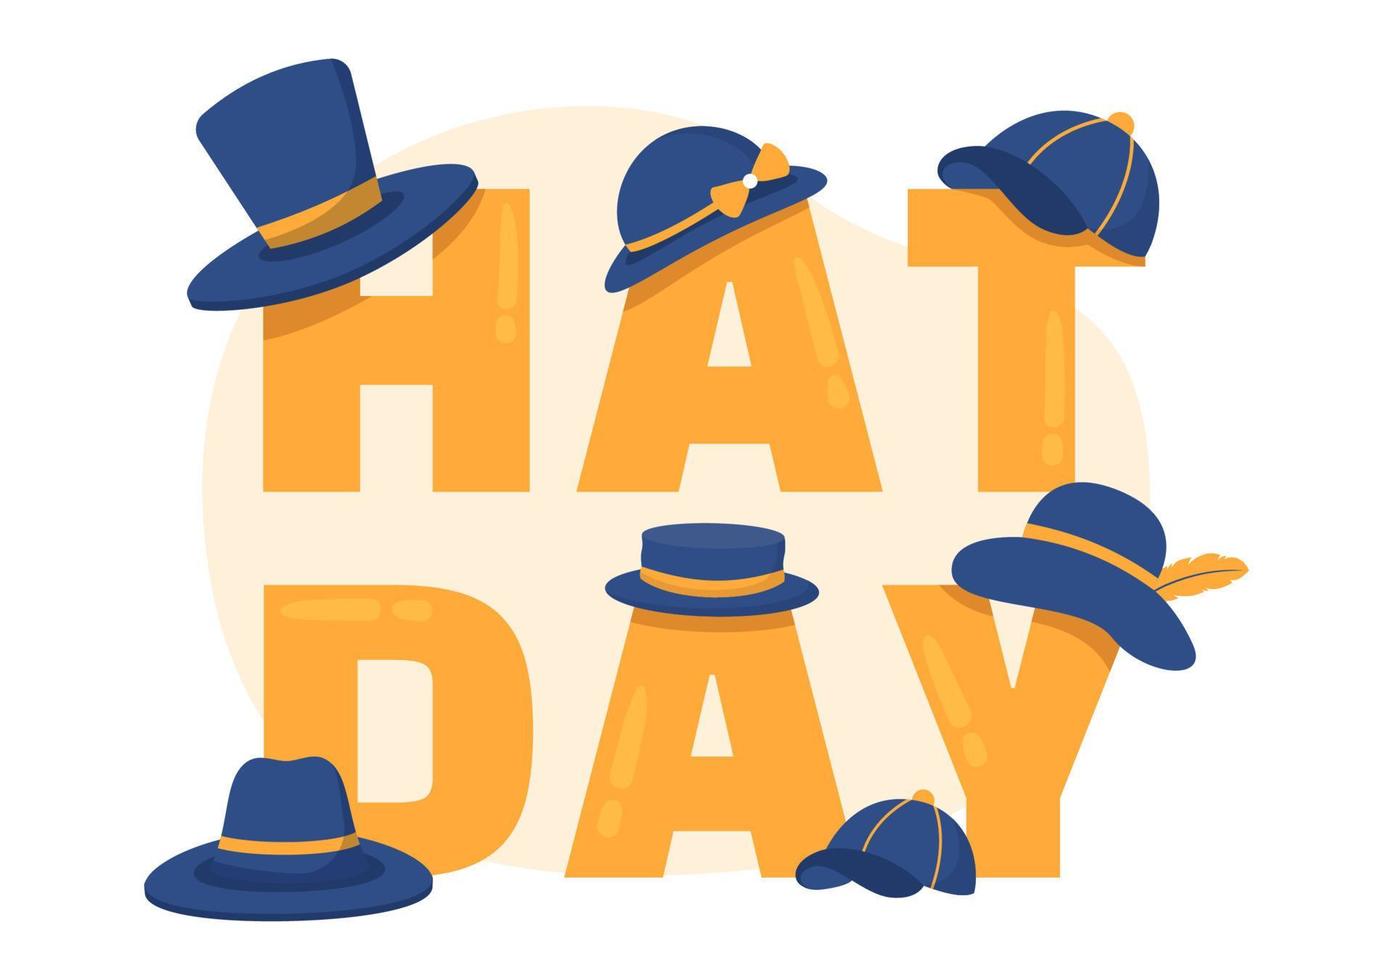 journée nationale du chapeau célébrée chaque année le 15 janvier avec des chapeaux fedora, une casquette, une cloche ou un derby en dessin animé plat illustration de modèles dessinés à la main vecteur